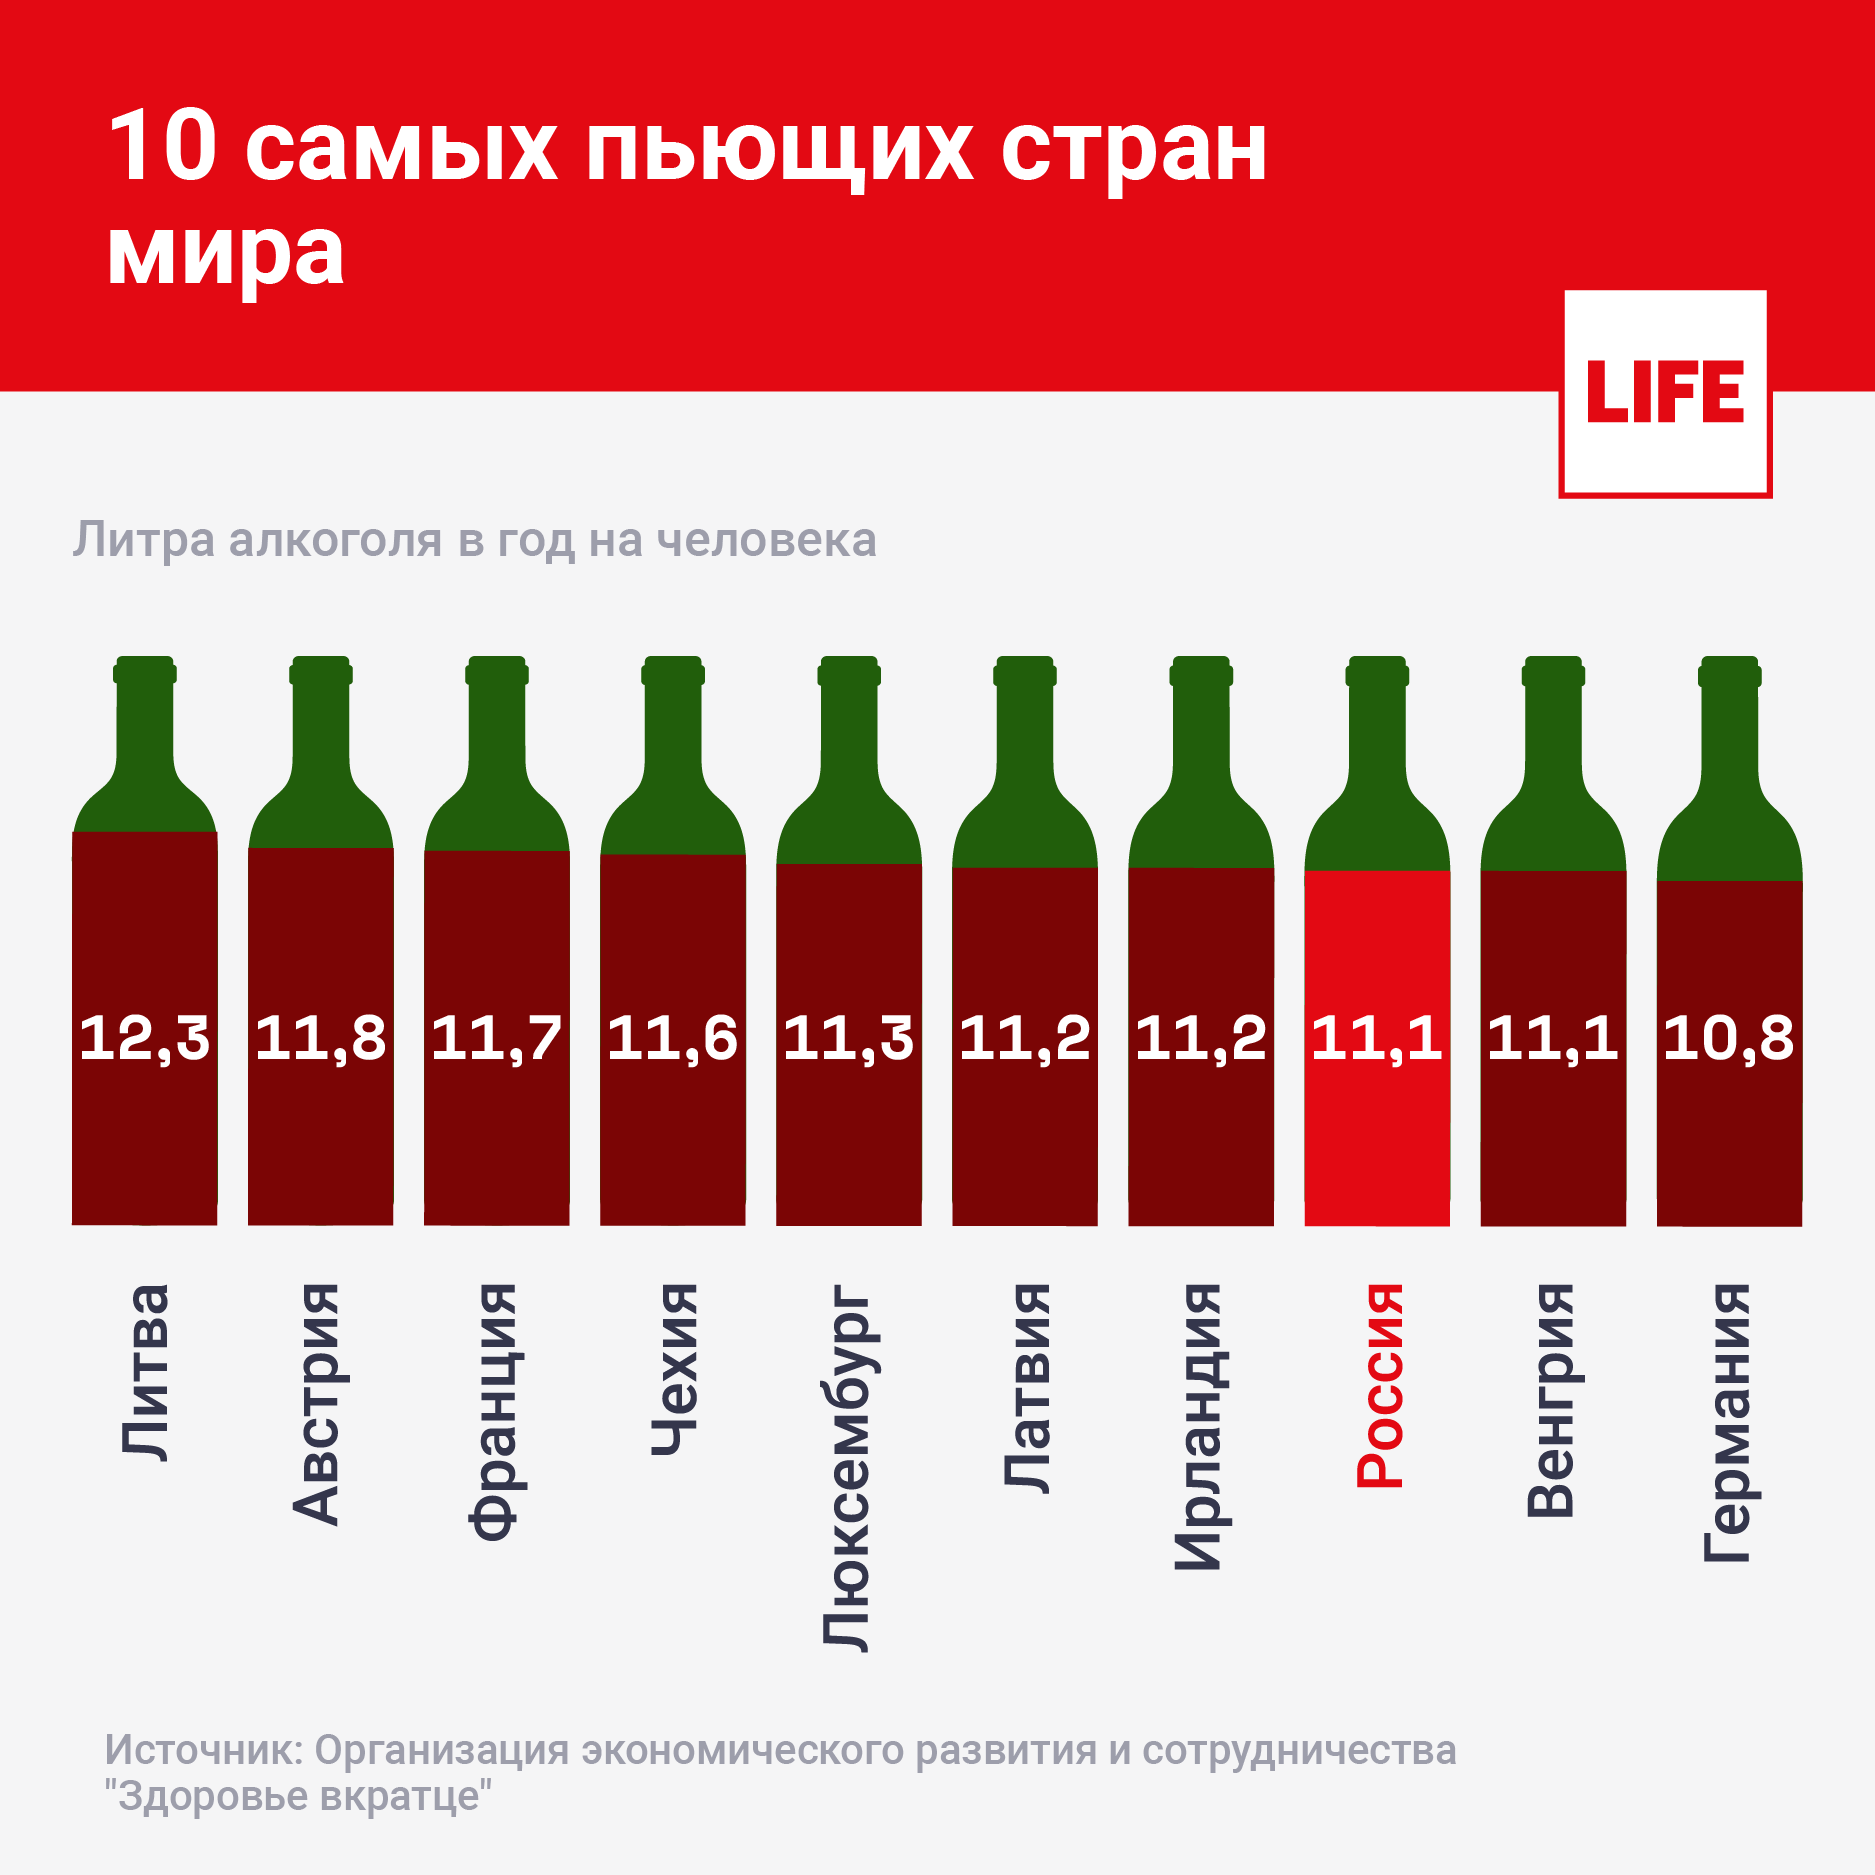 Когда в россии заработает пей. Самая поюшая Страна в мире. Самые пьющие страны.